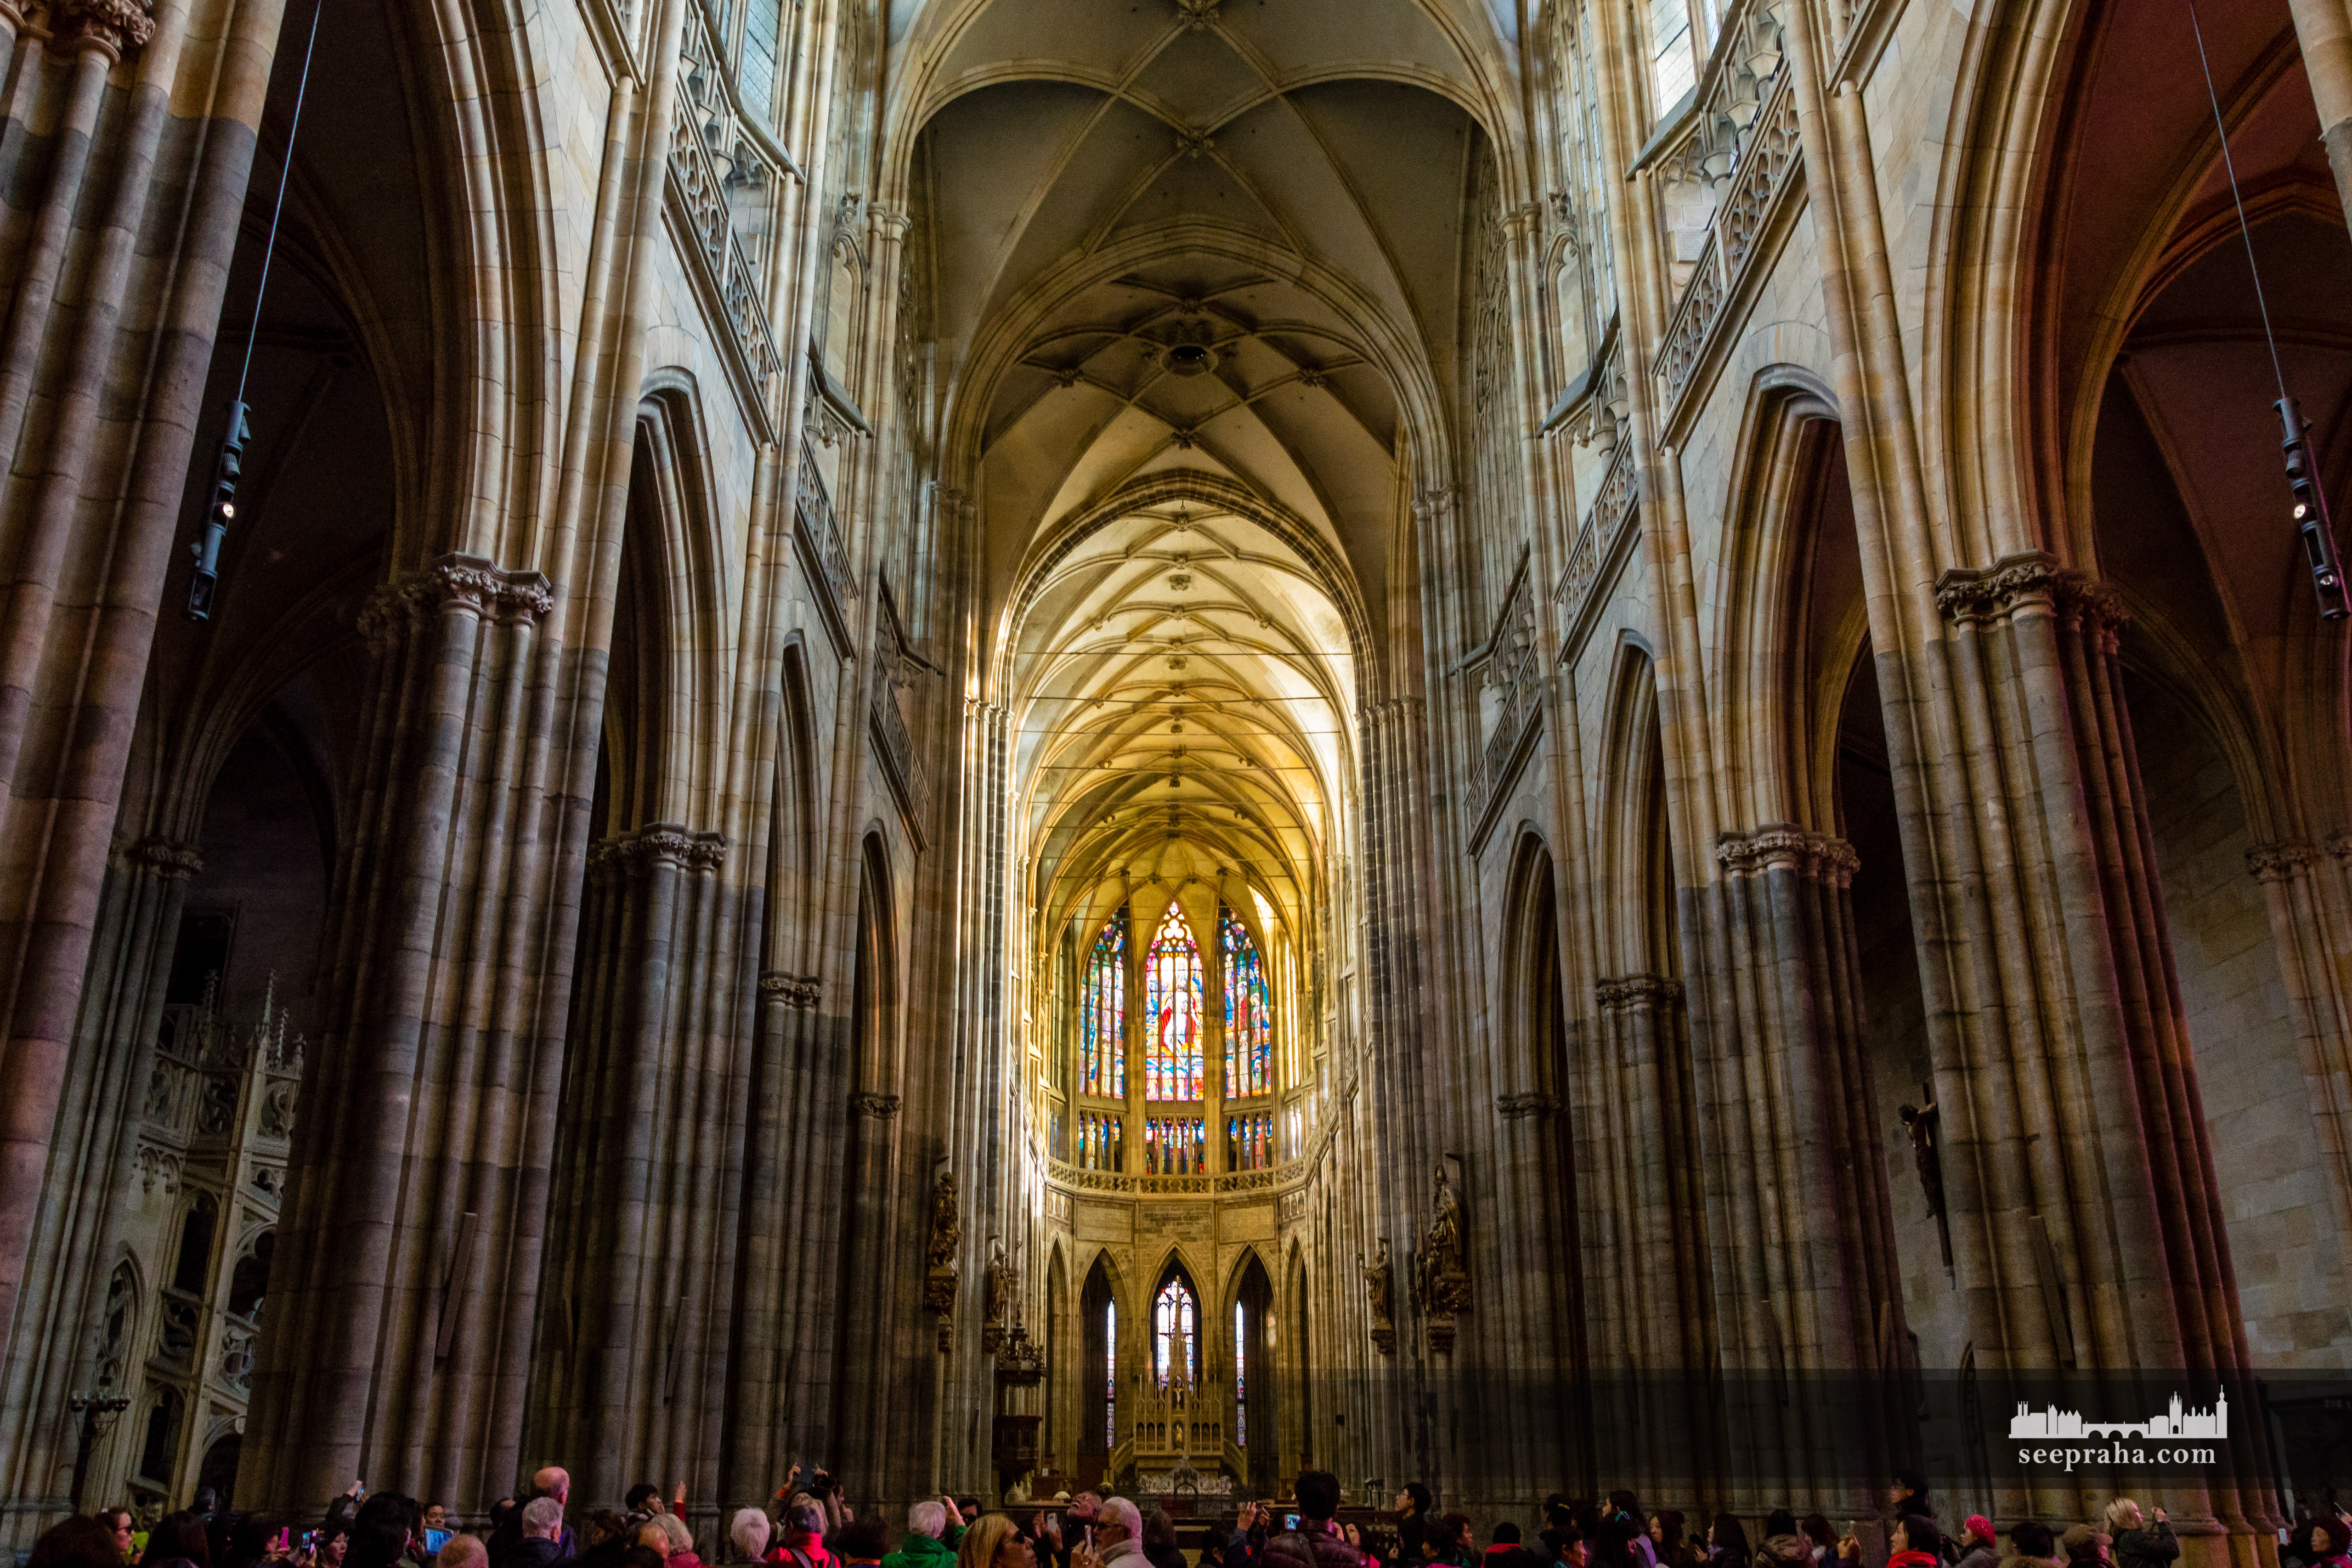 Interiorul Catedralei Sf. Vitus, Praga, Cehia